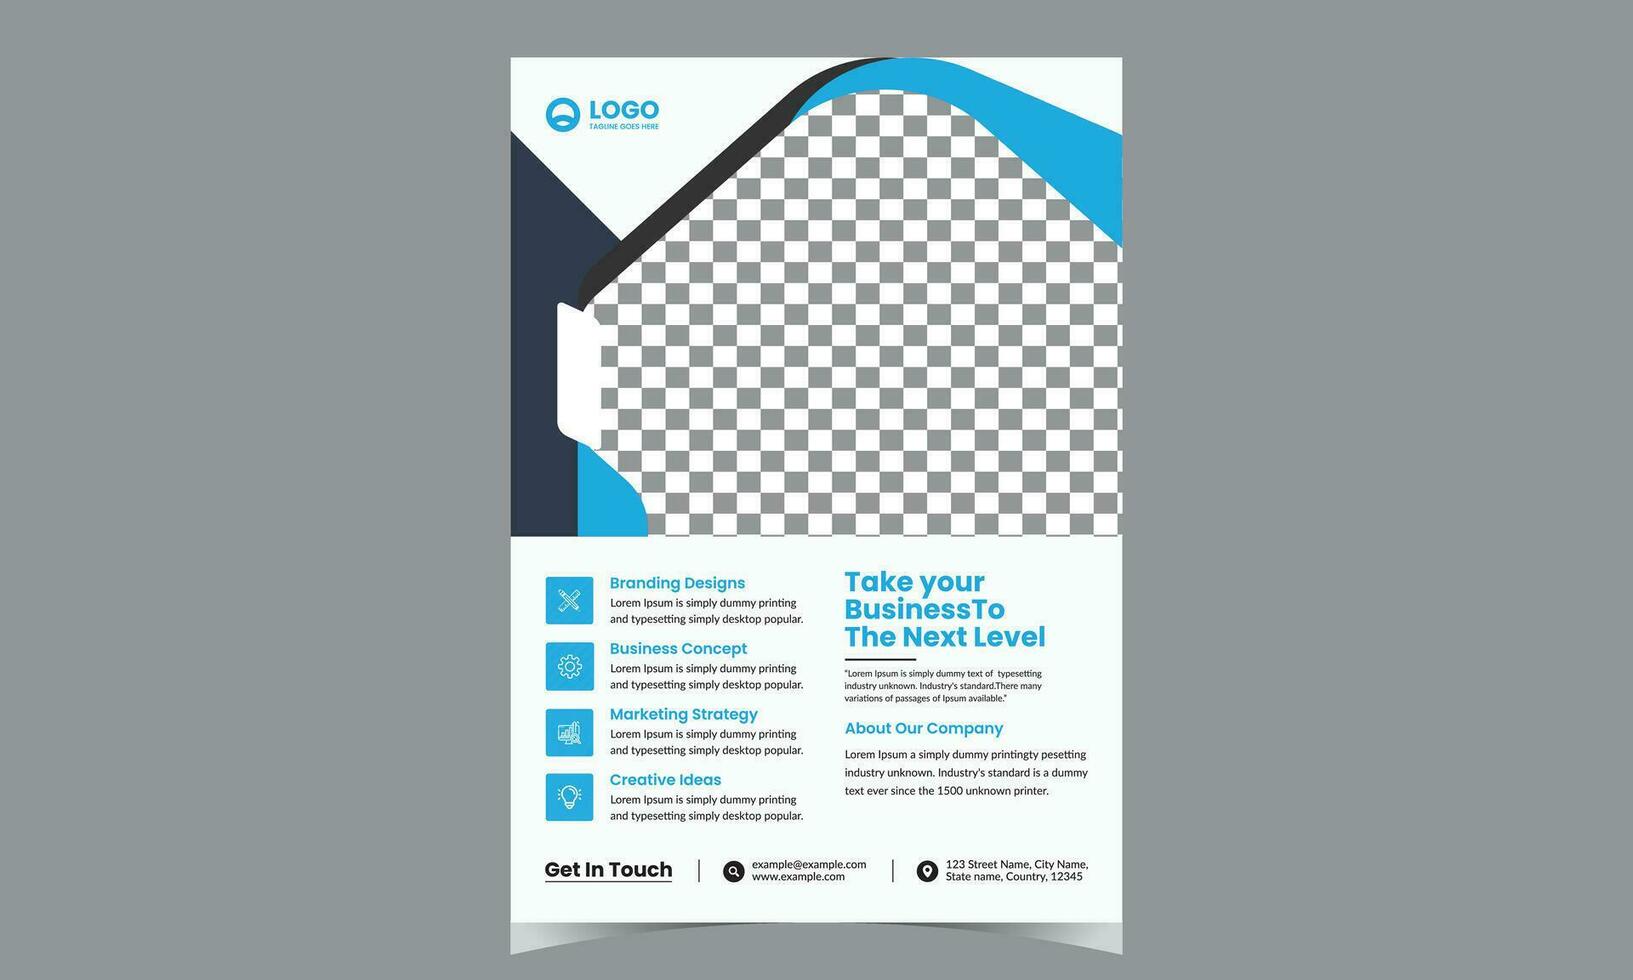 collection de moderne conception affiche prospectus brochure couverture disposition modèle avec cercle graphique éléments et espace pour photo Contexte vecteur